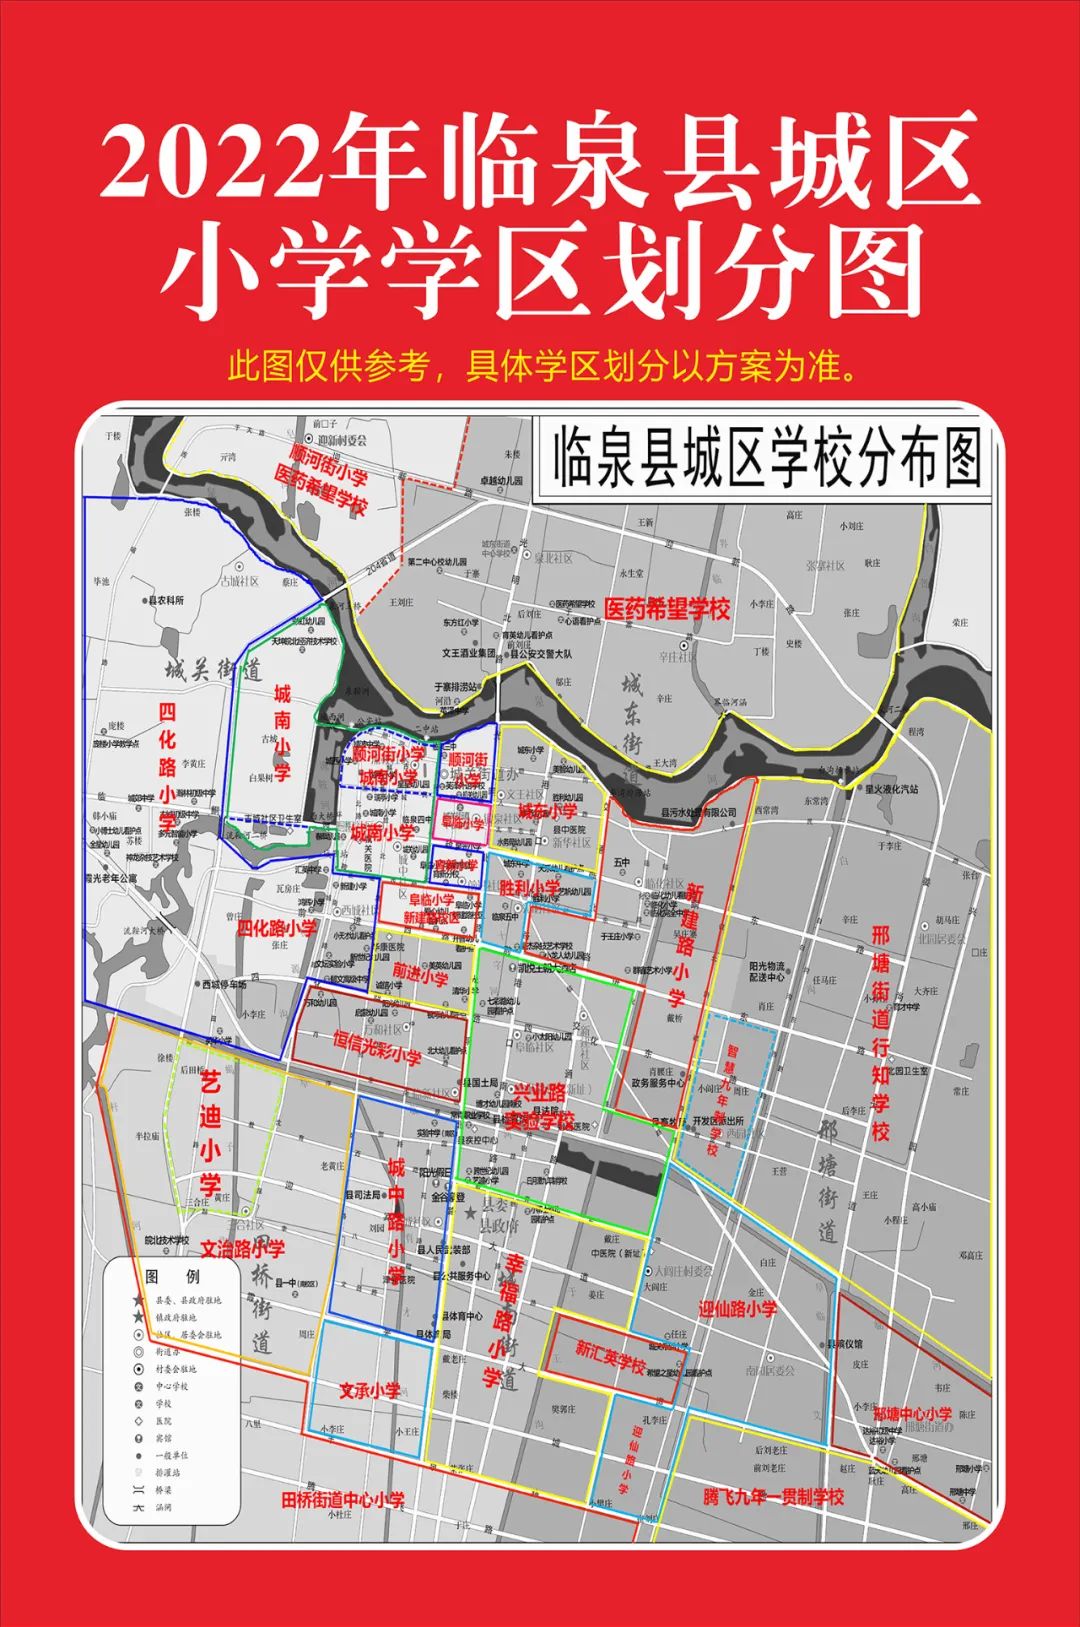 2022年临泉县中小学学区划分出来啦!